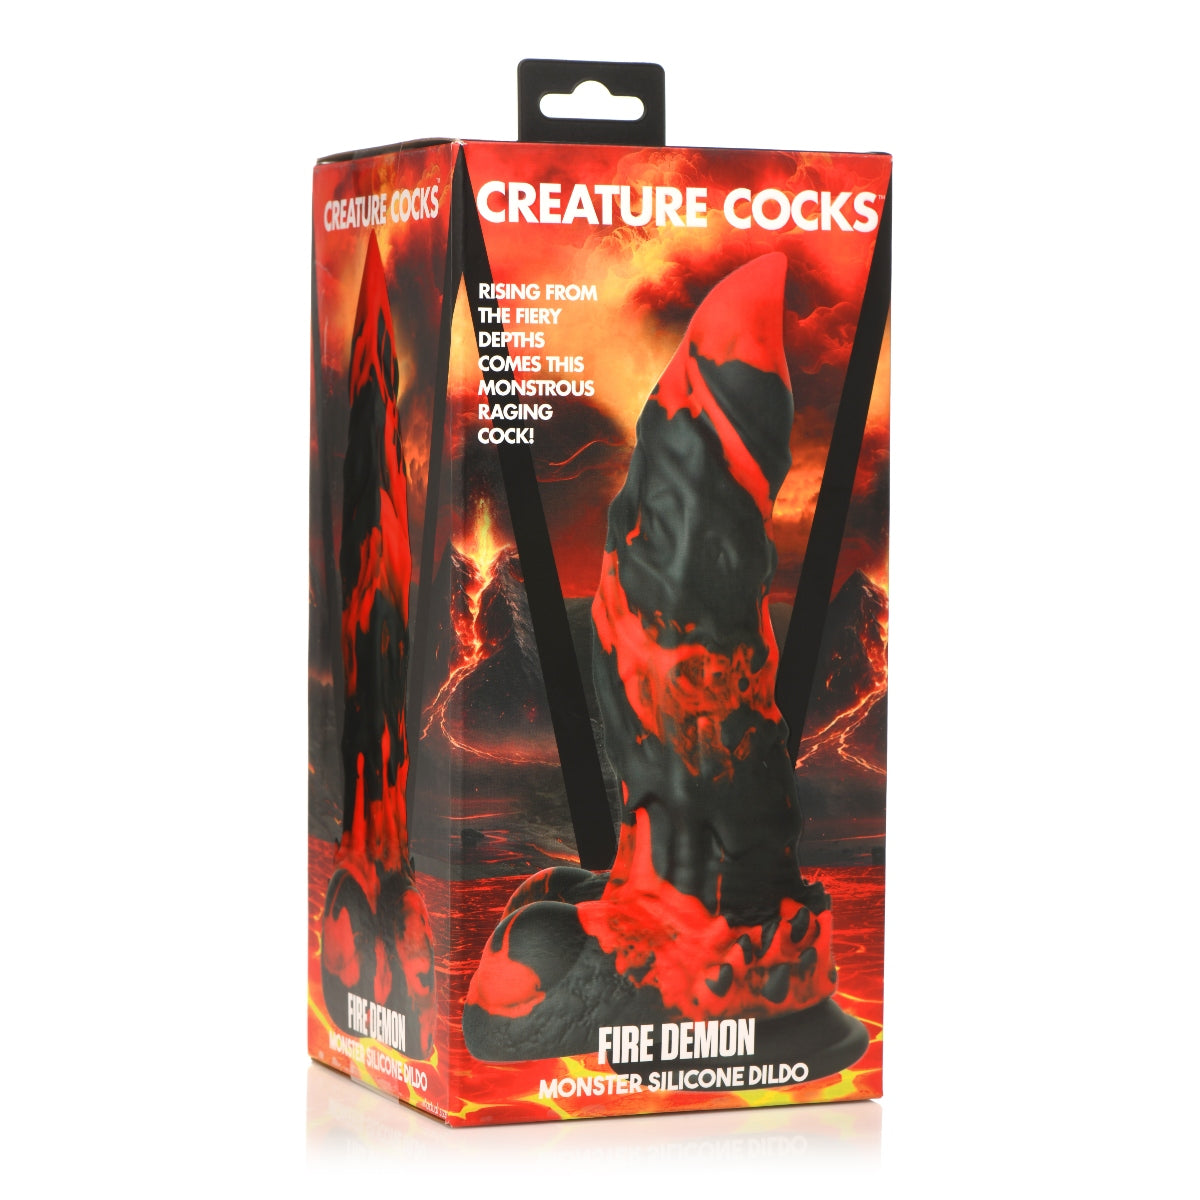 Creature Cocks Fire Demon Monster Silicone Dildo Black Red - Simply Pleasure